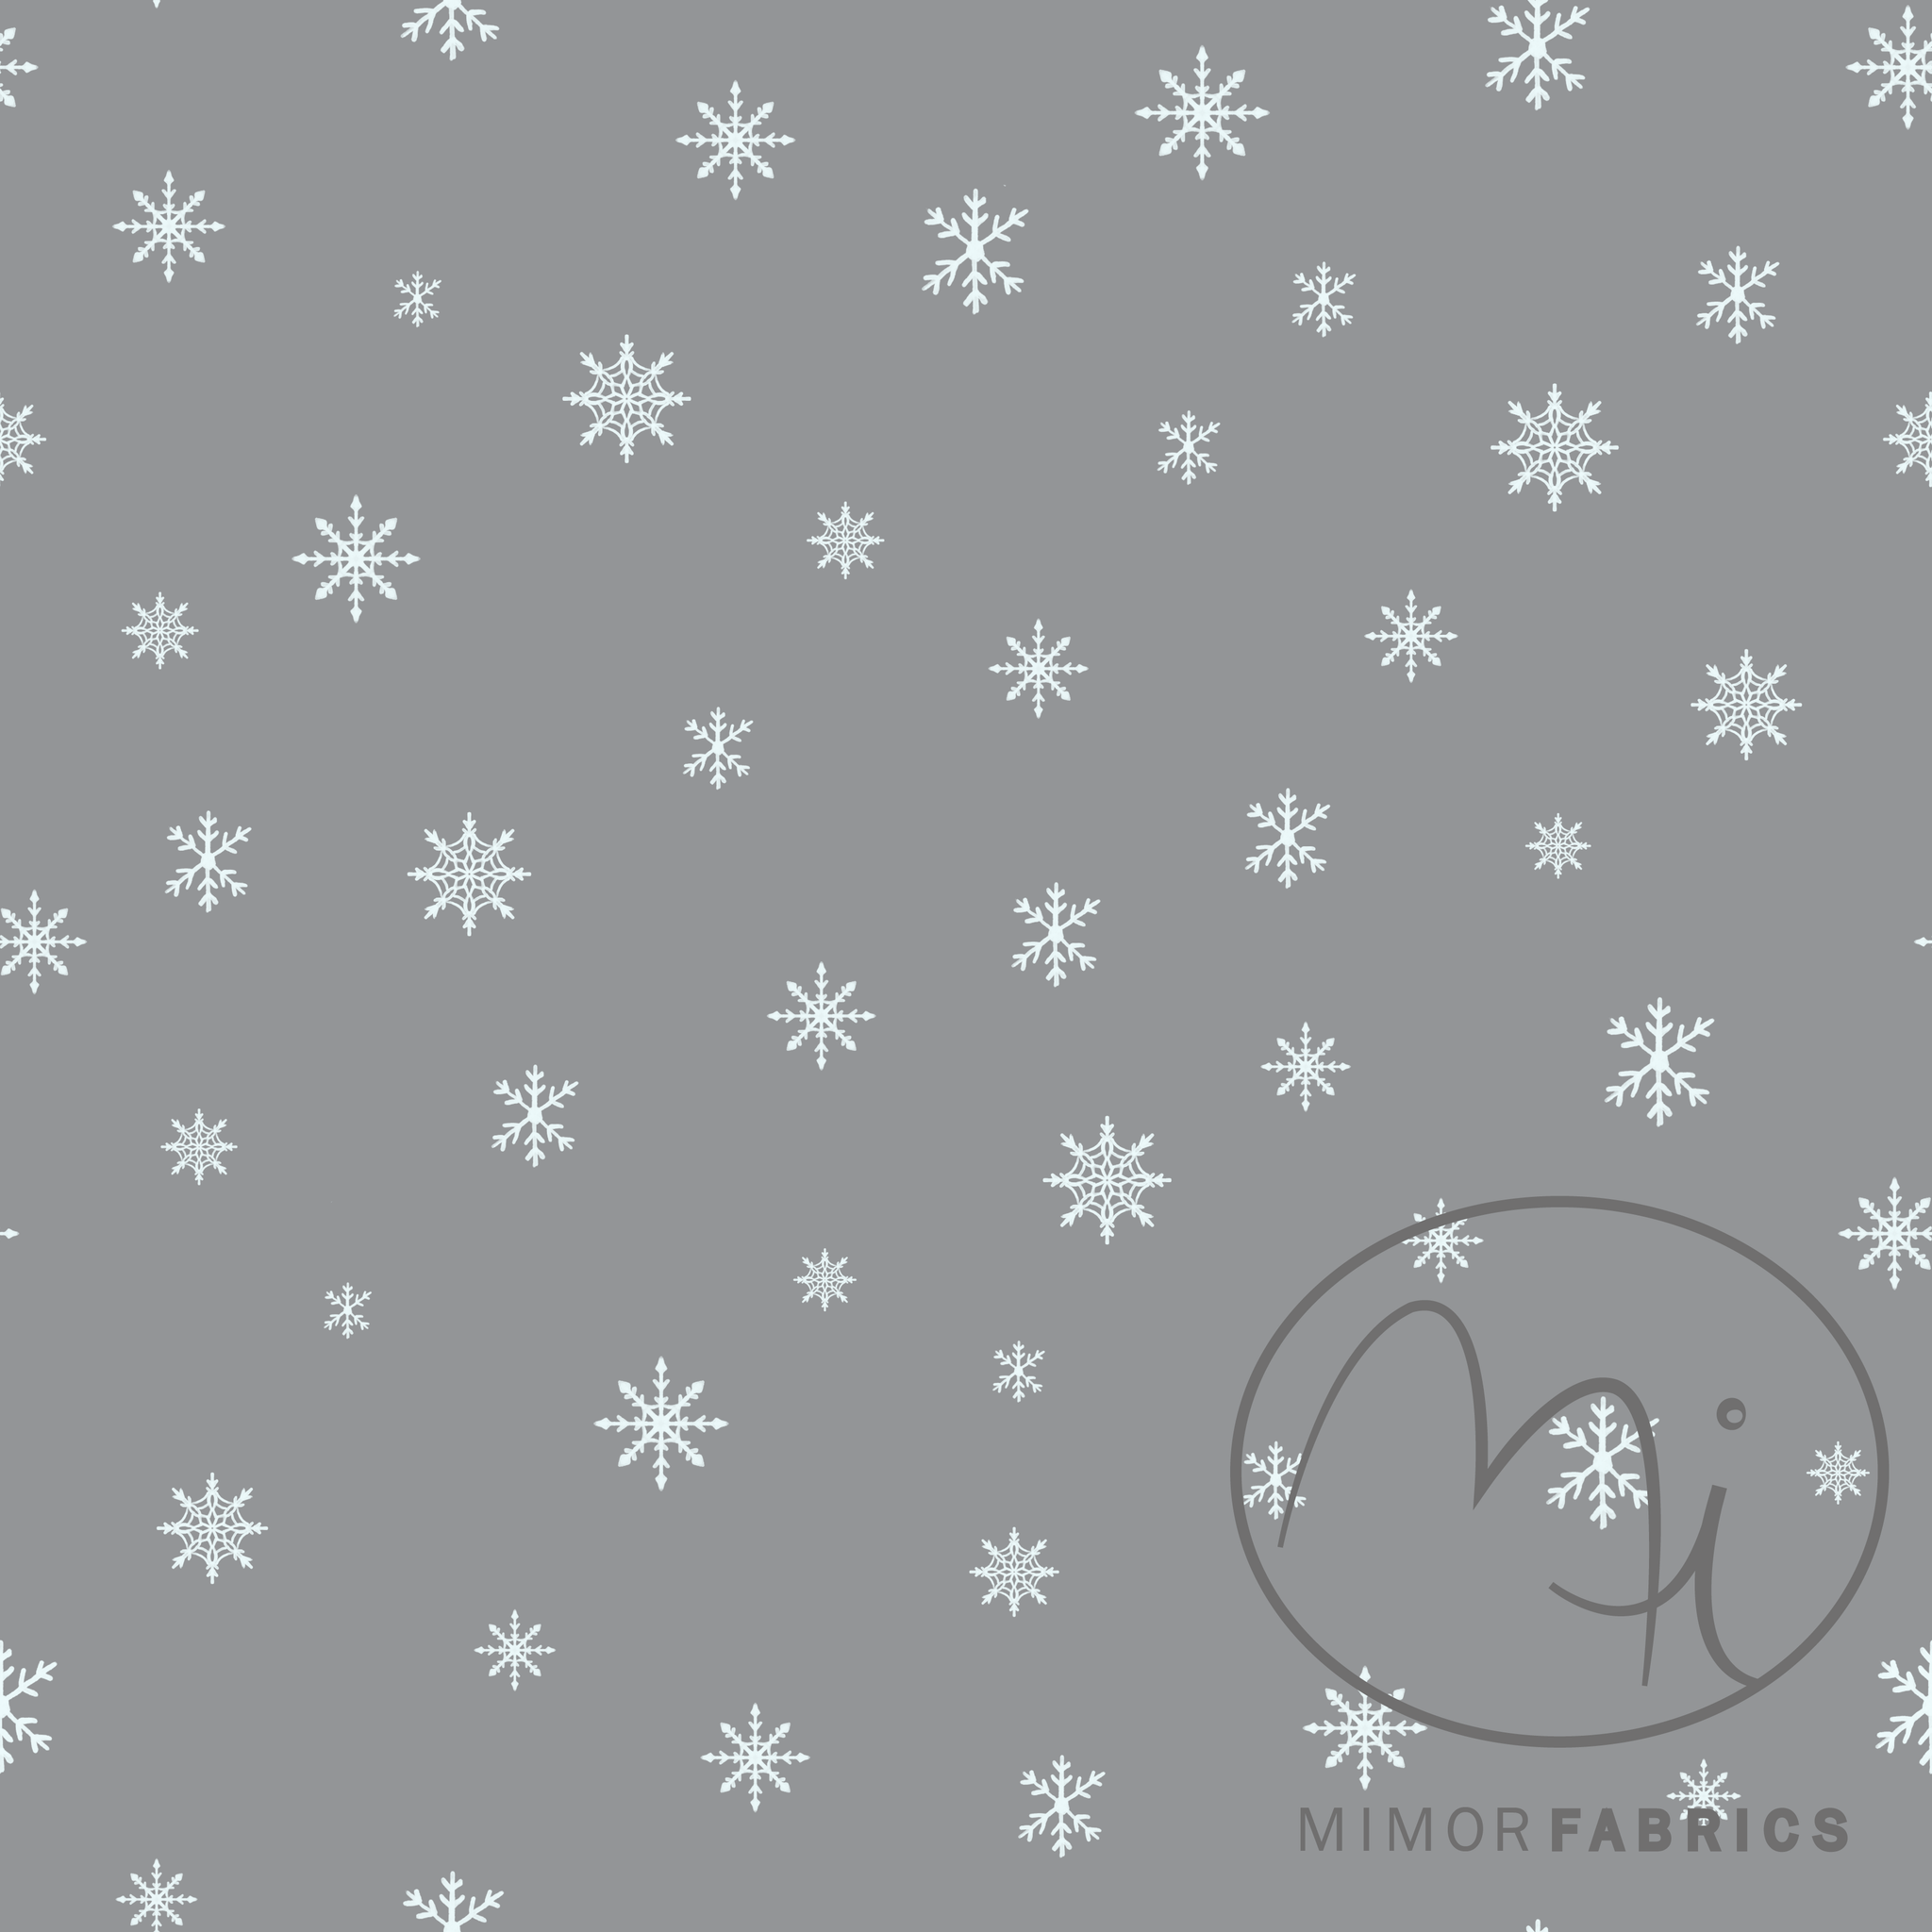 French Terry Stoff Schneeflocken Weihnachtsstoff  Grau und Weiß - Mimor Fabrics